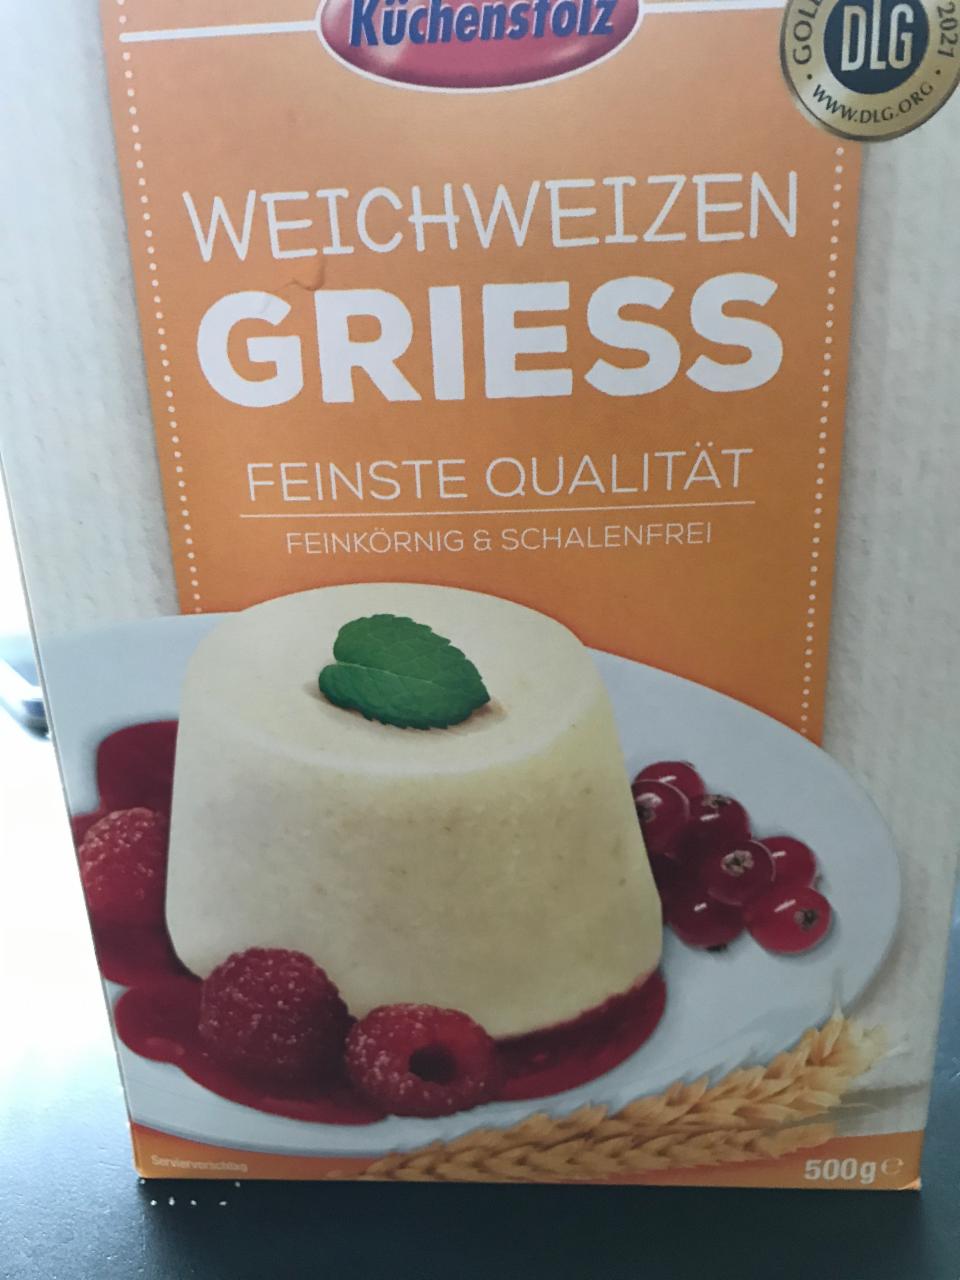 Фото - Weichweizen Griess Küchenstolz